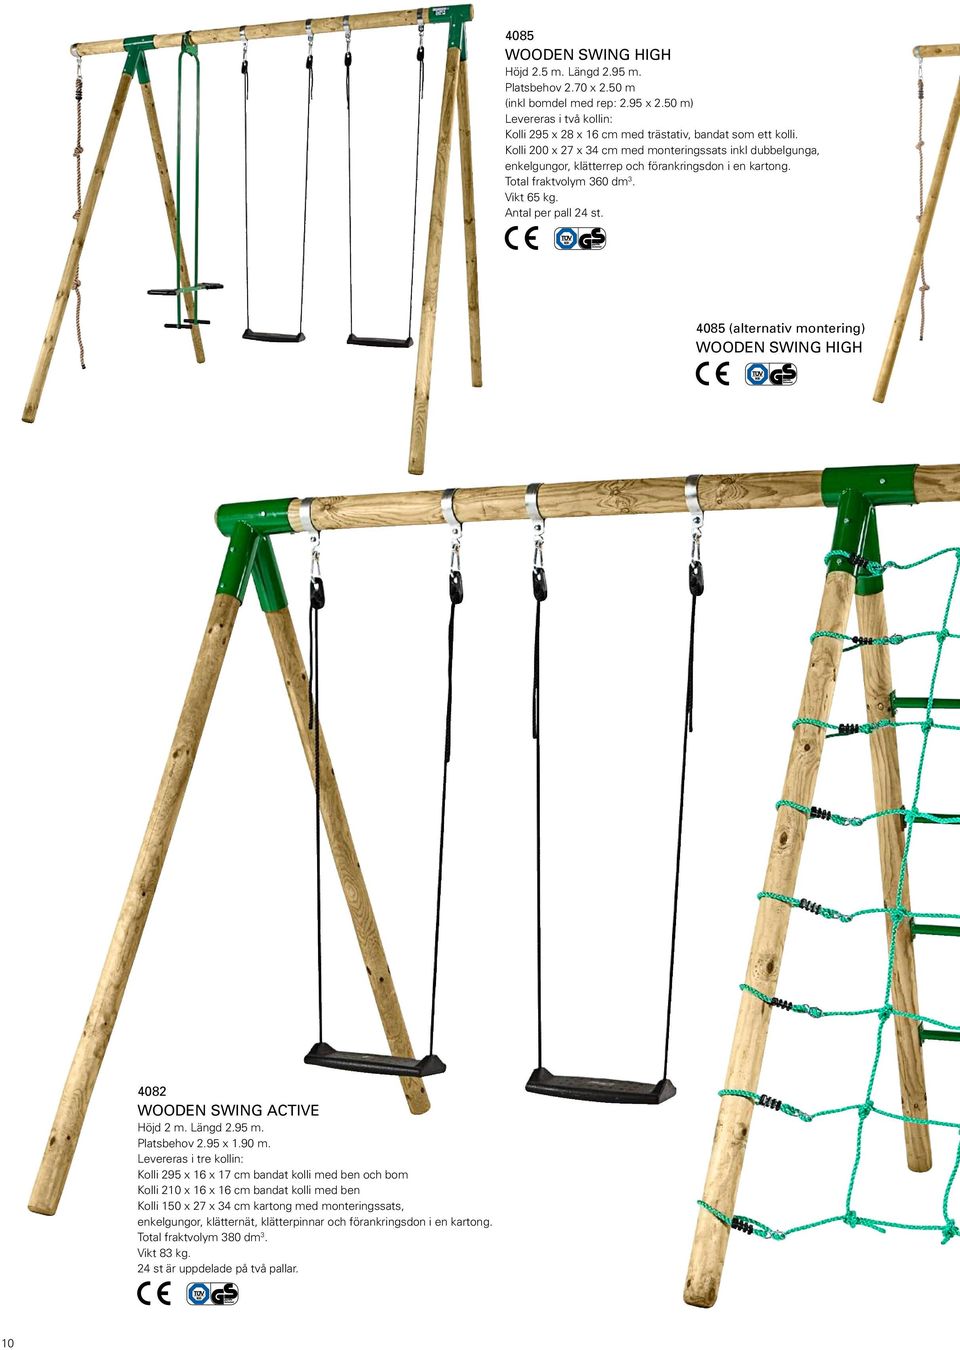 4085 (alternativ montering) Wooden Swing high 4082 Wooden Swing active Höjd 2 m. Längd 2.95 m. Platsbehov 2.95 x 1.90 m.